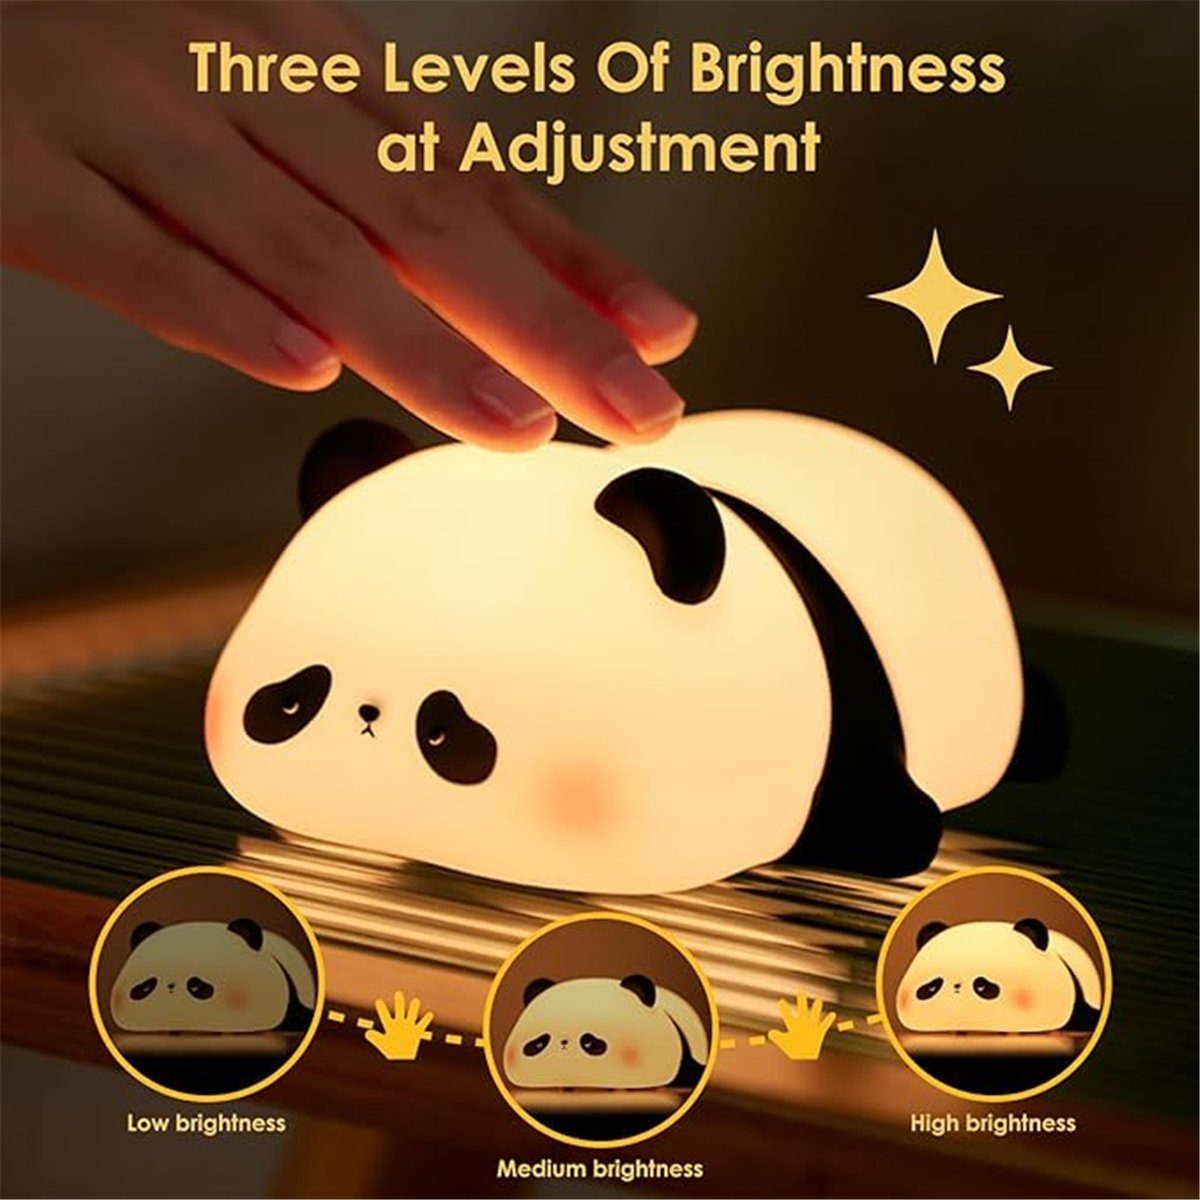 Timer-Touch-Steuerung Nachtlicht LED K&B Kinder mit für LED-Panda-Nachtlicht